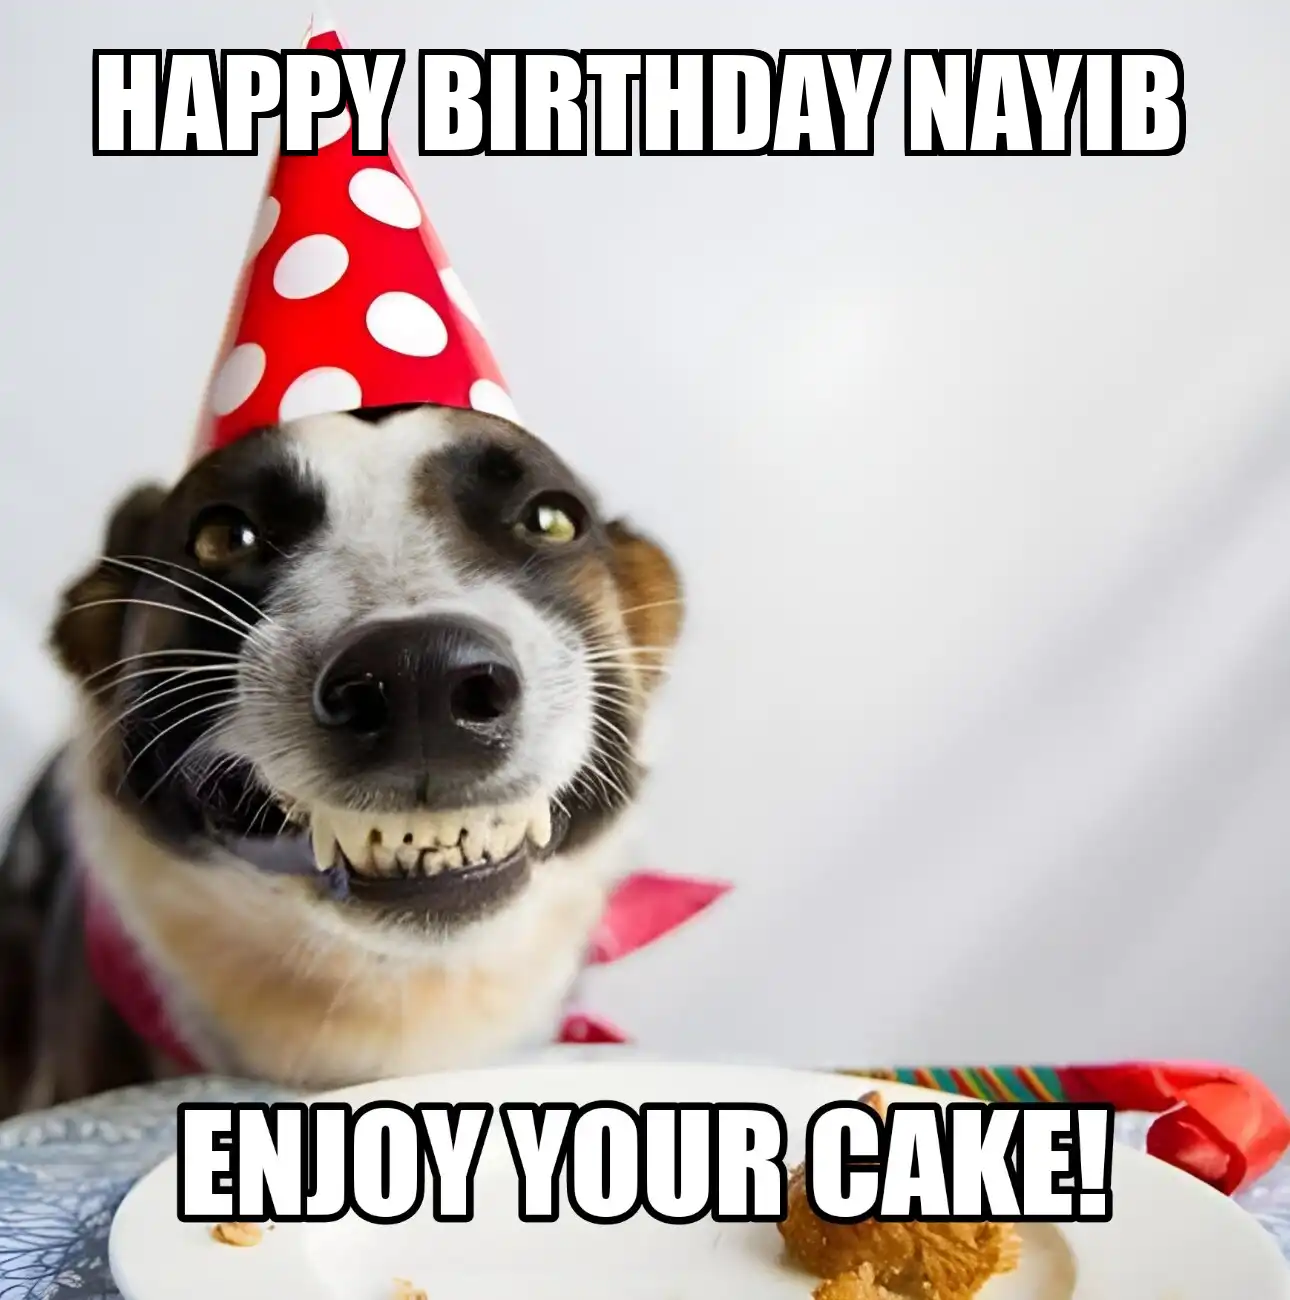 Happy Birthday Nayib Enjoy Your Cake Dog Meme